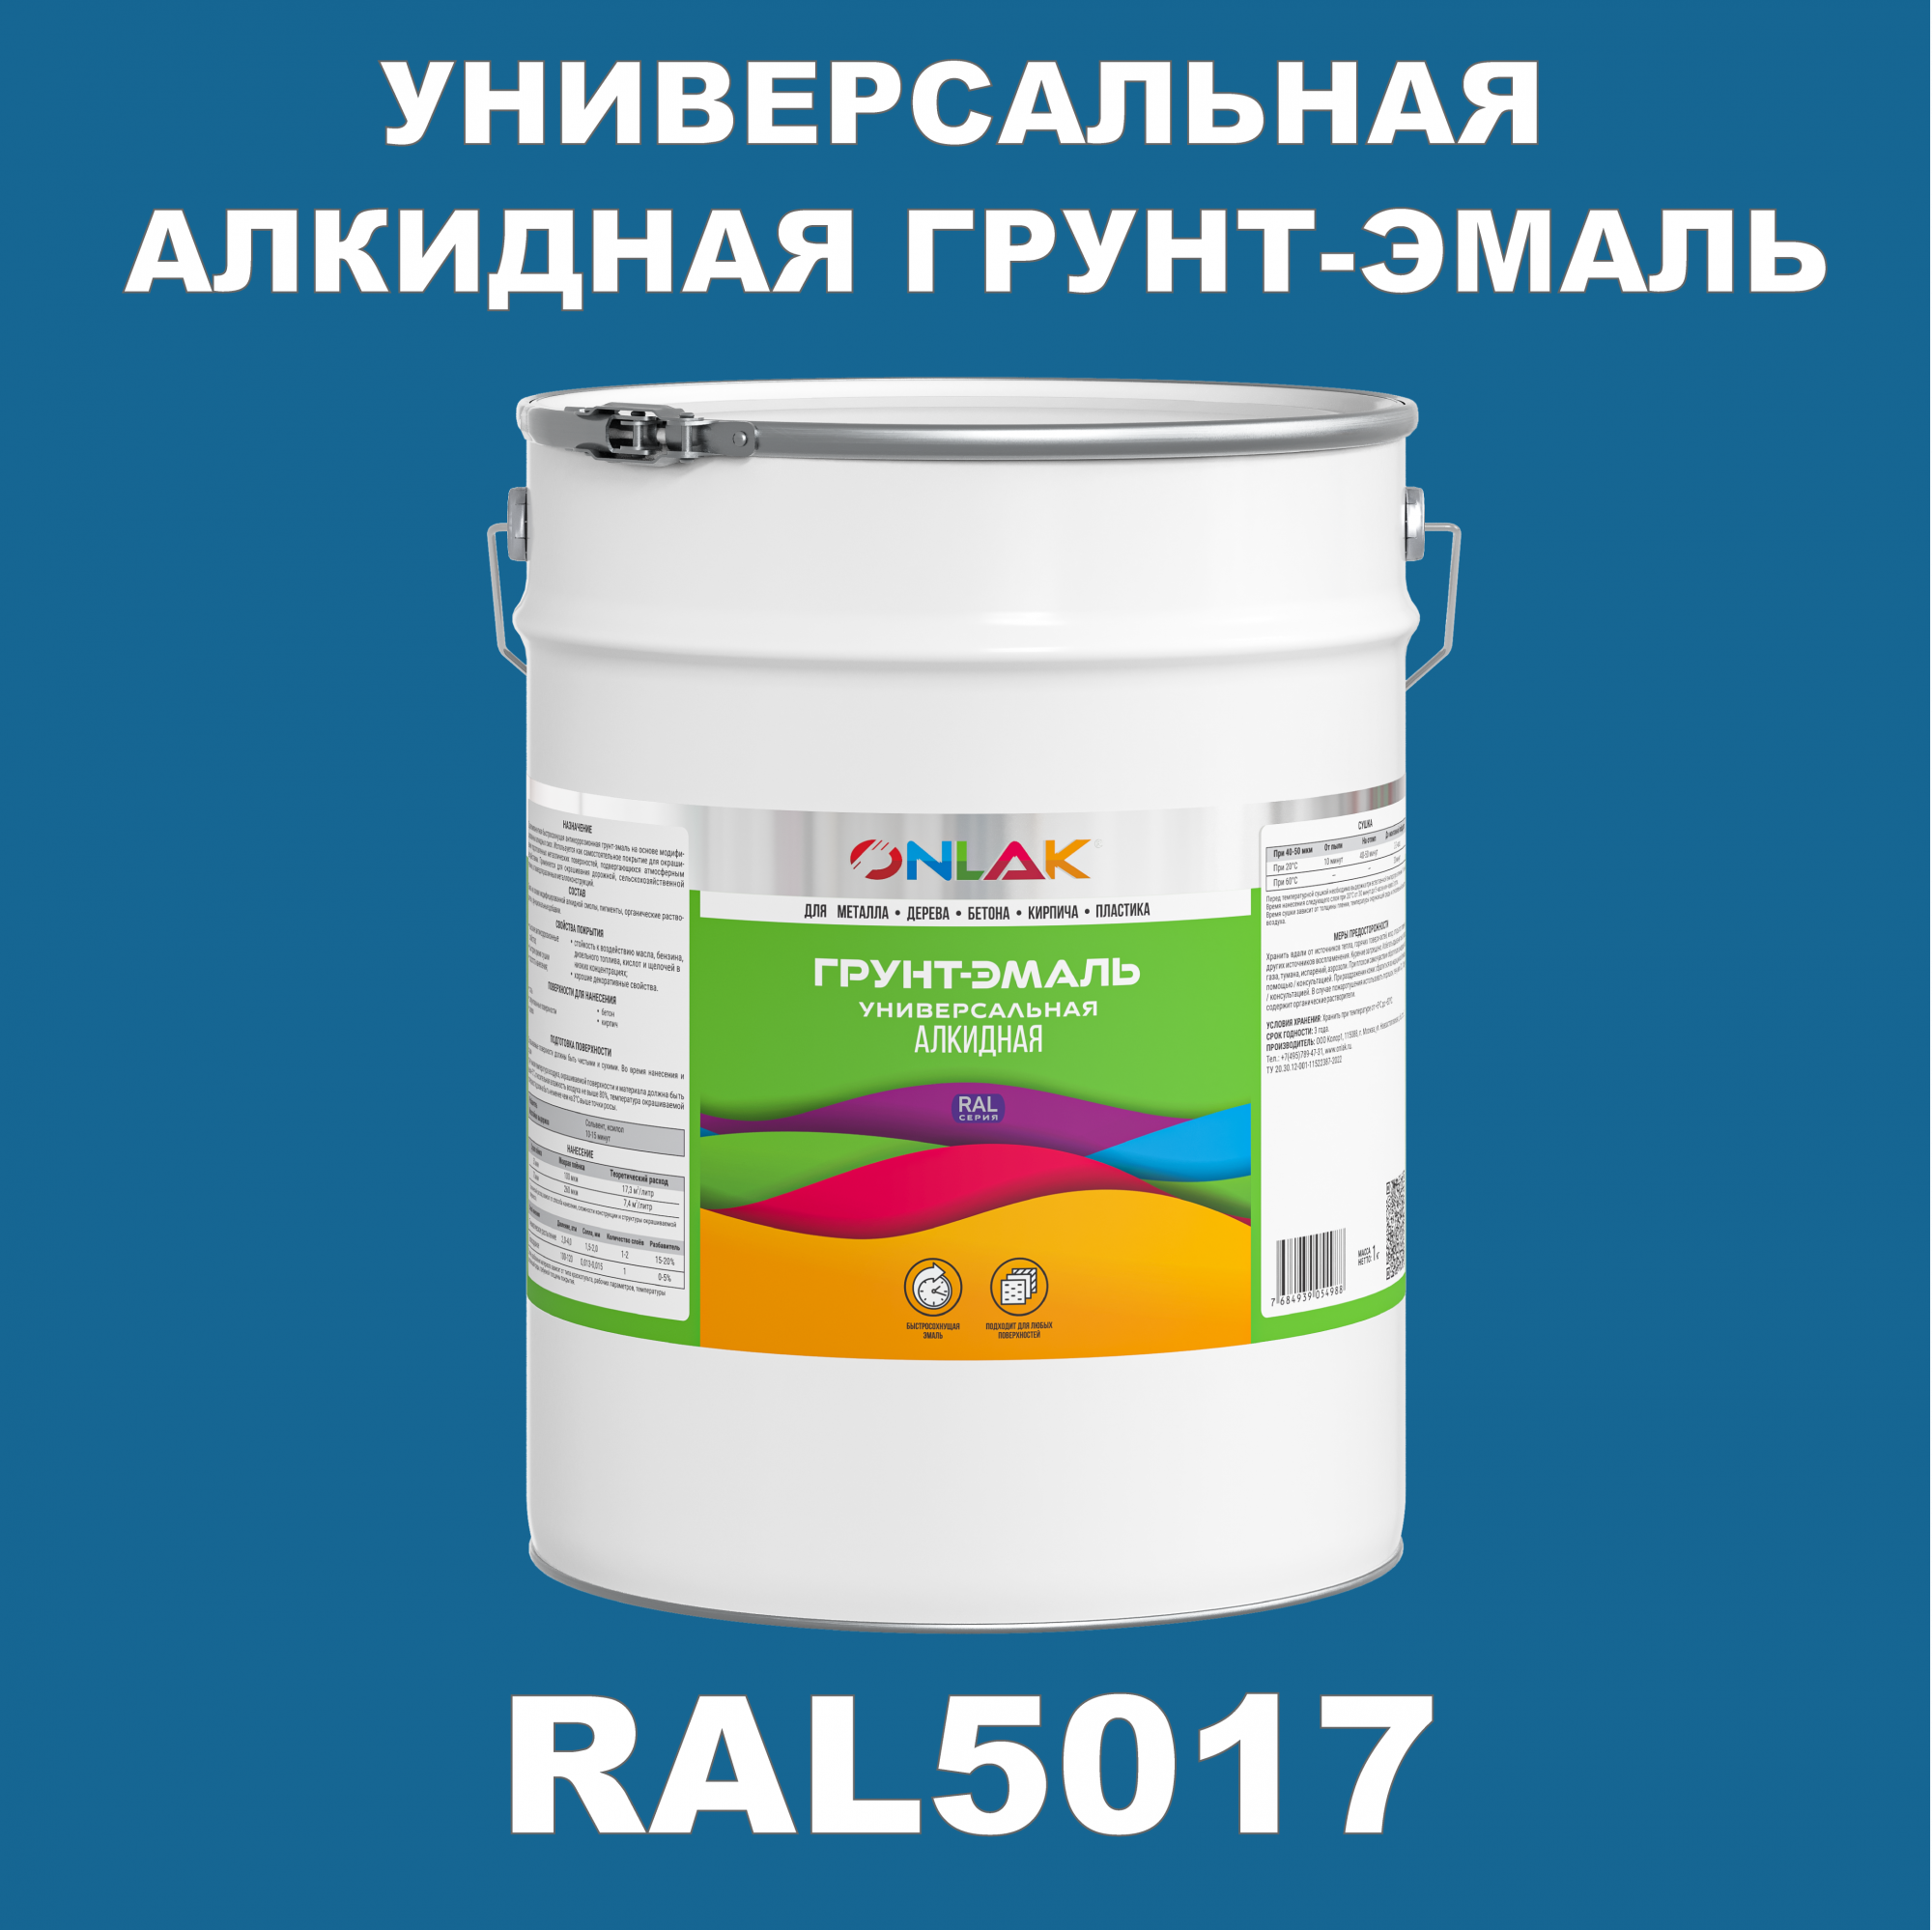 Грунт-эмаль ONLAK 1К RAL5017 антикоррозионная алкидная по металлу по ржавчине 20 кг грунт эмаль skladno по ржавчине алкидная желтая 1 8 кг